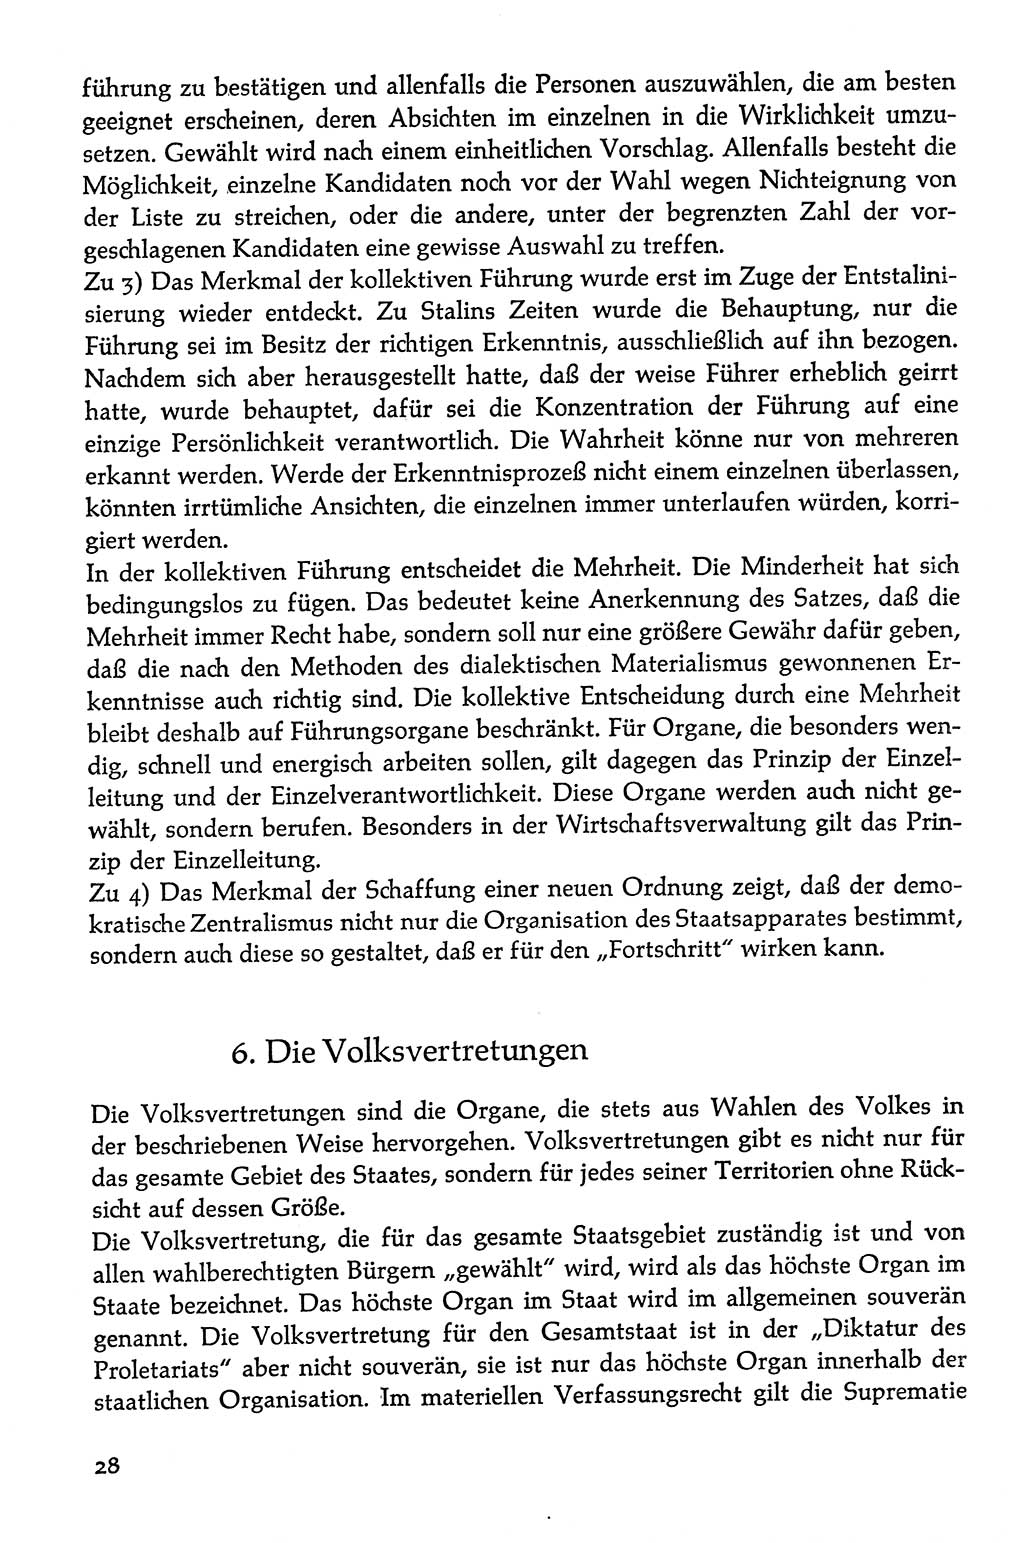 Volksdemokratische Ordnung in Mitteldeutschland [Deutsche Demokratische Republik (DDR)], Texte zur verfassungsrechtlichen Situation 1963, Seite 28 (Volksdem. Ordn. Md. DDR 1963, S. 28)